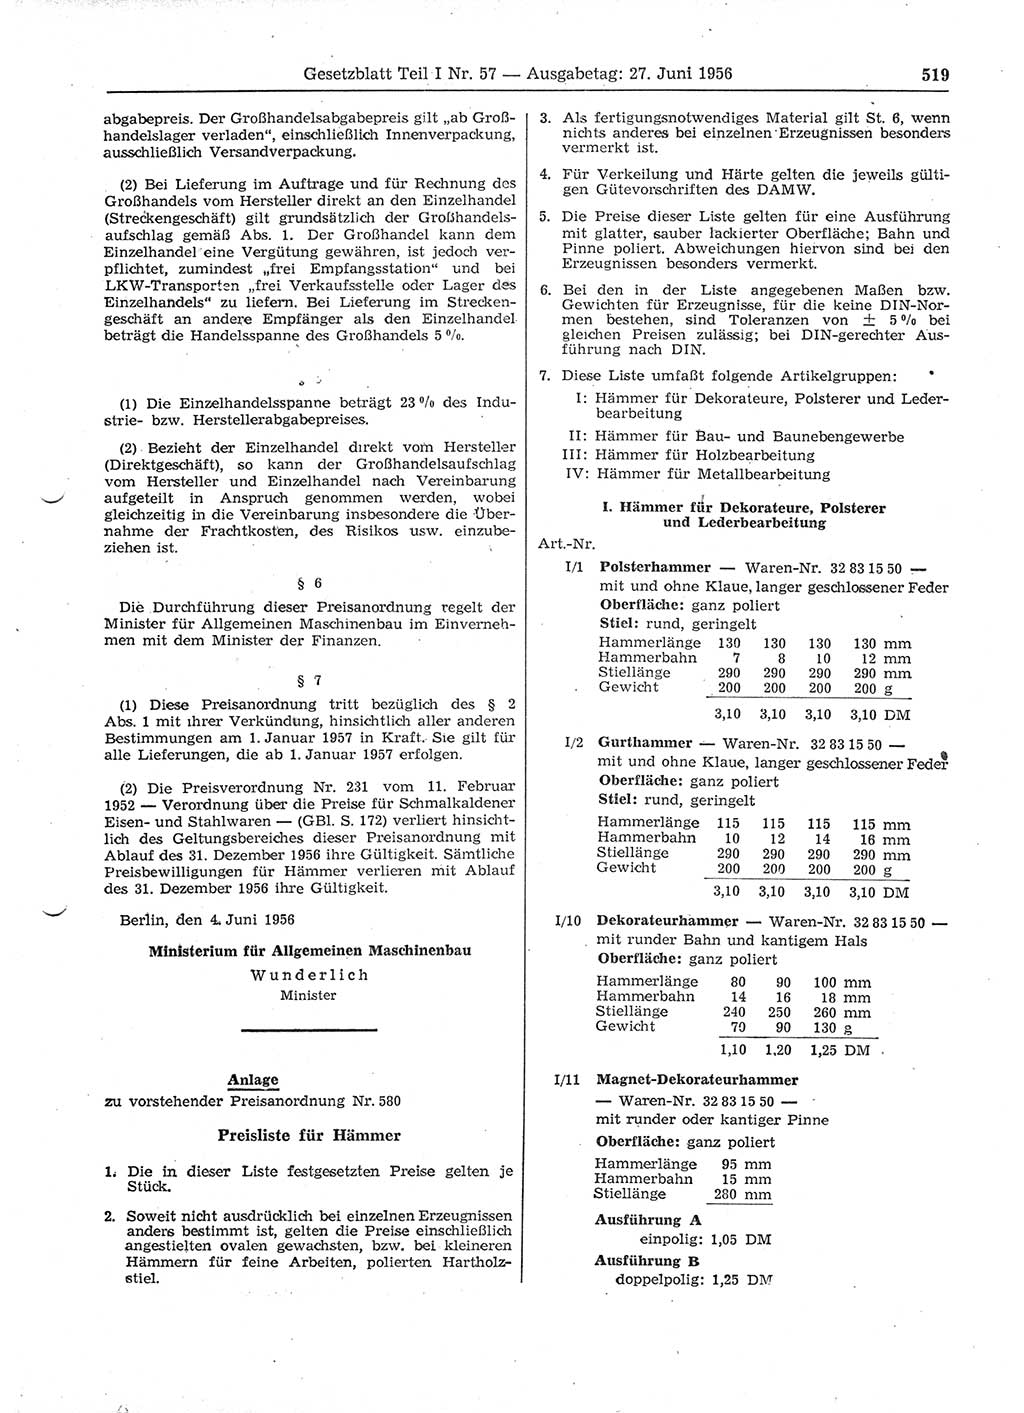 Gesetzblatt (GBl.) der Deutschen Demokratischen Republik (DDR) Teil Ⅰ 1956, Seite 519 (GBl. DDR Ⅰ 1956, S. 519)